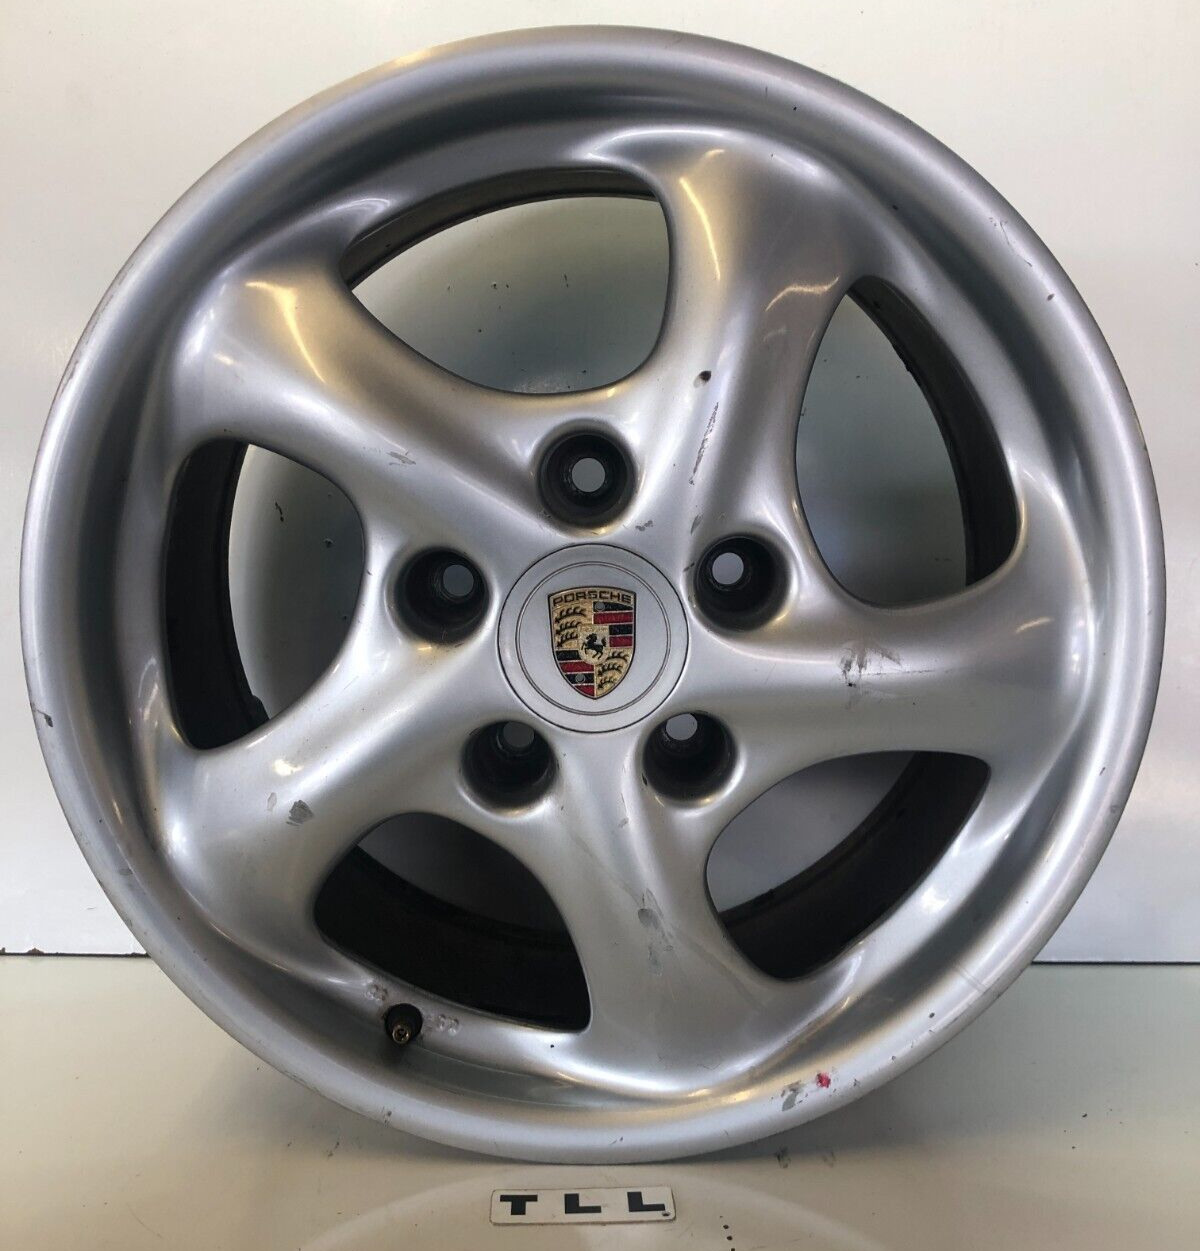 2000-04 Porsche Boxster 986 Rear Wheel 17 X 8.5 Rim 5 Spoke - 98636212606